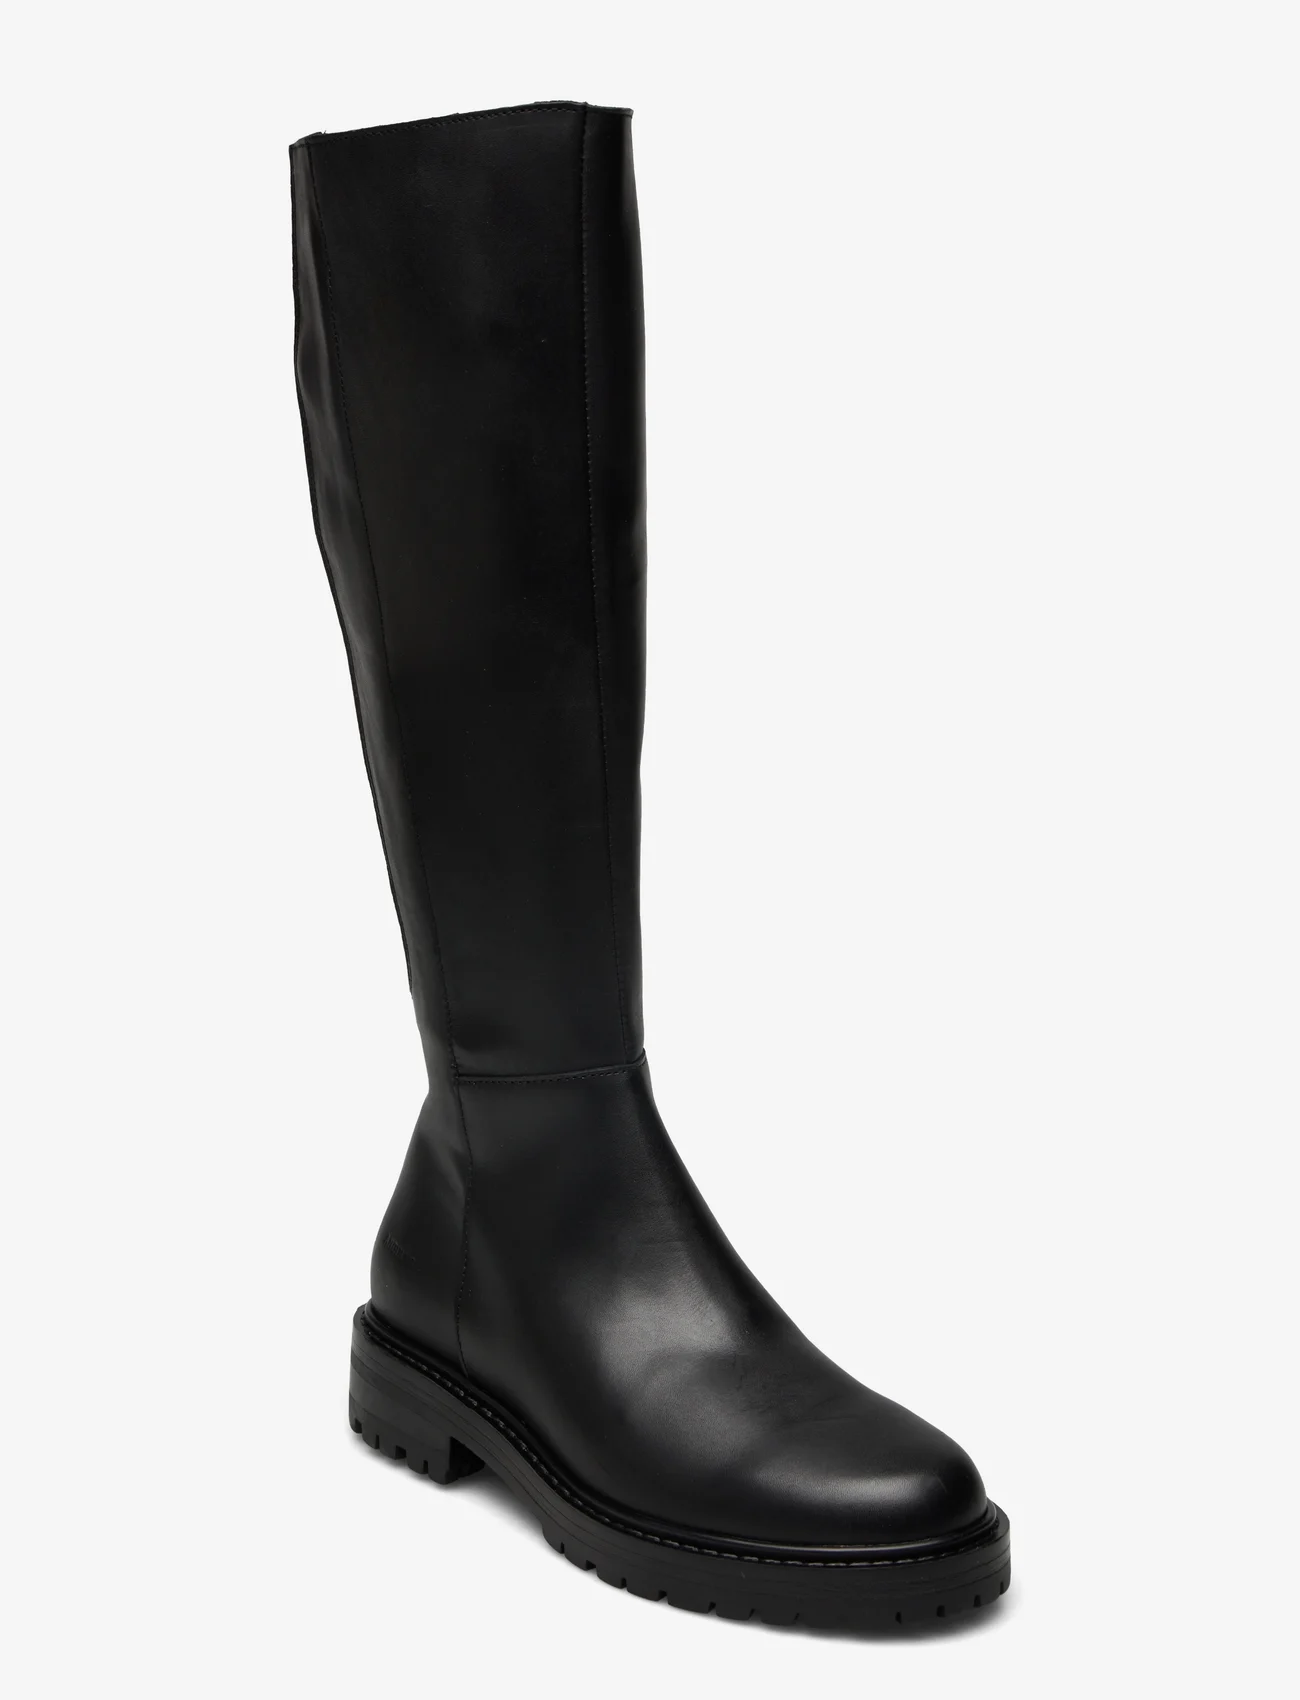 ANGULUS - Boots - flat - pitkävartiset saappaat - 1605/001 black basic/black - 0